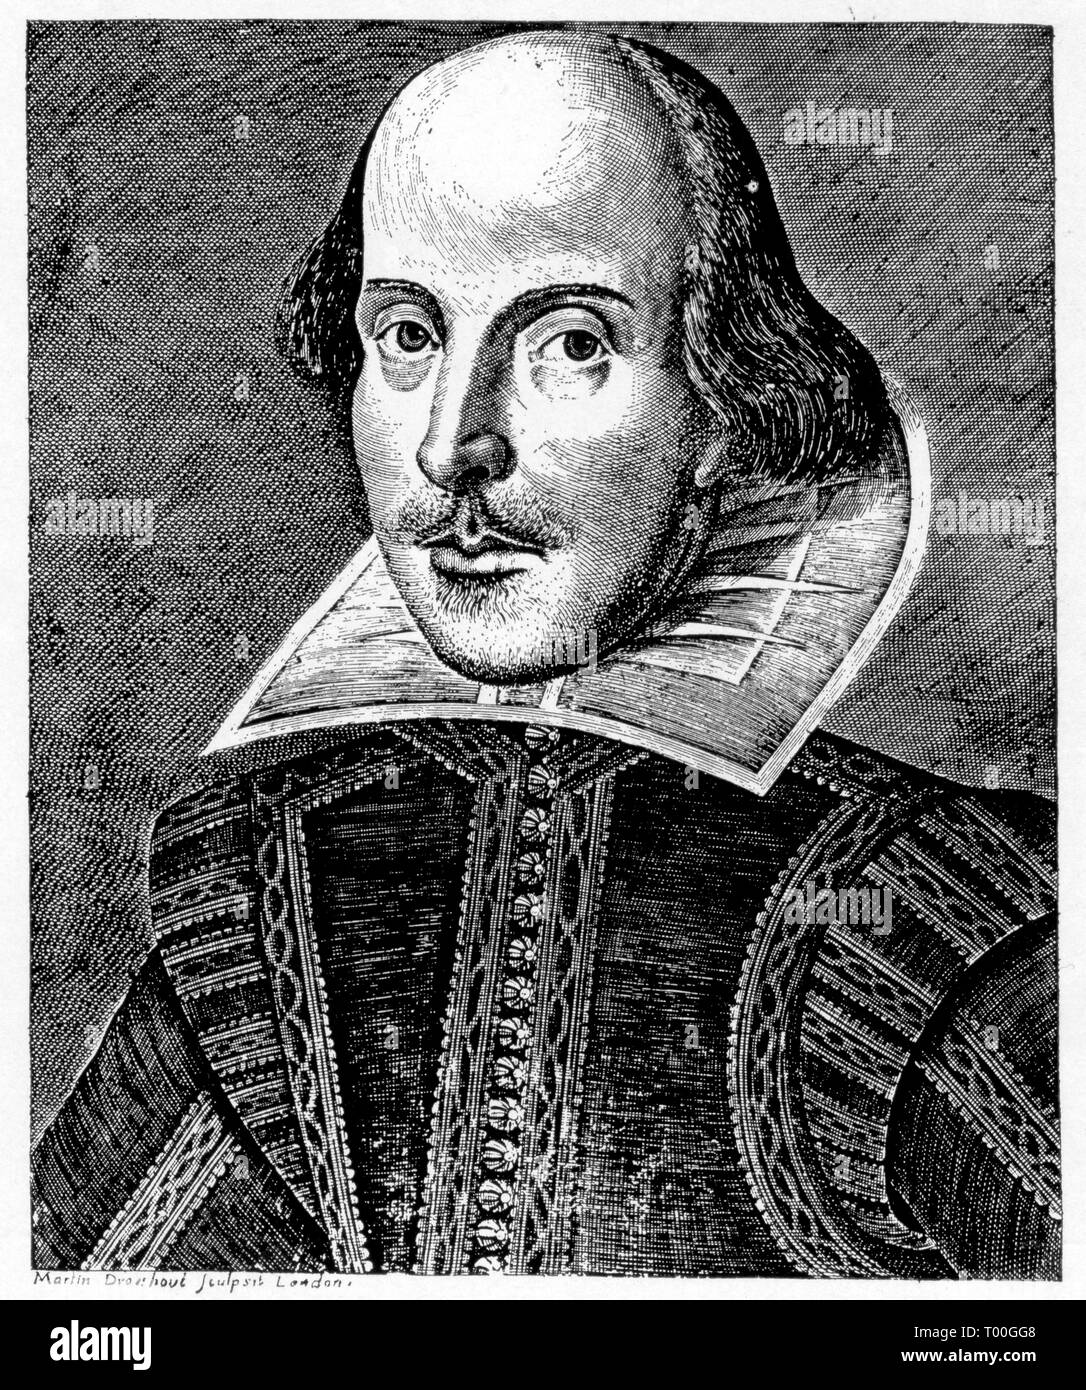 La page de titre de 'Mr. William Shakespeare's Comedies, Histories, & Tragedies' communément appelé le premier Folio, 1623. Par Martin Droeshout (1601-c1650). Banque D'Images